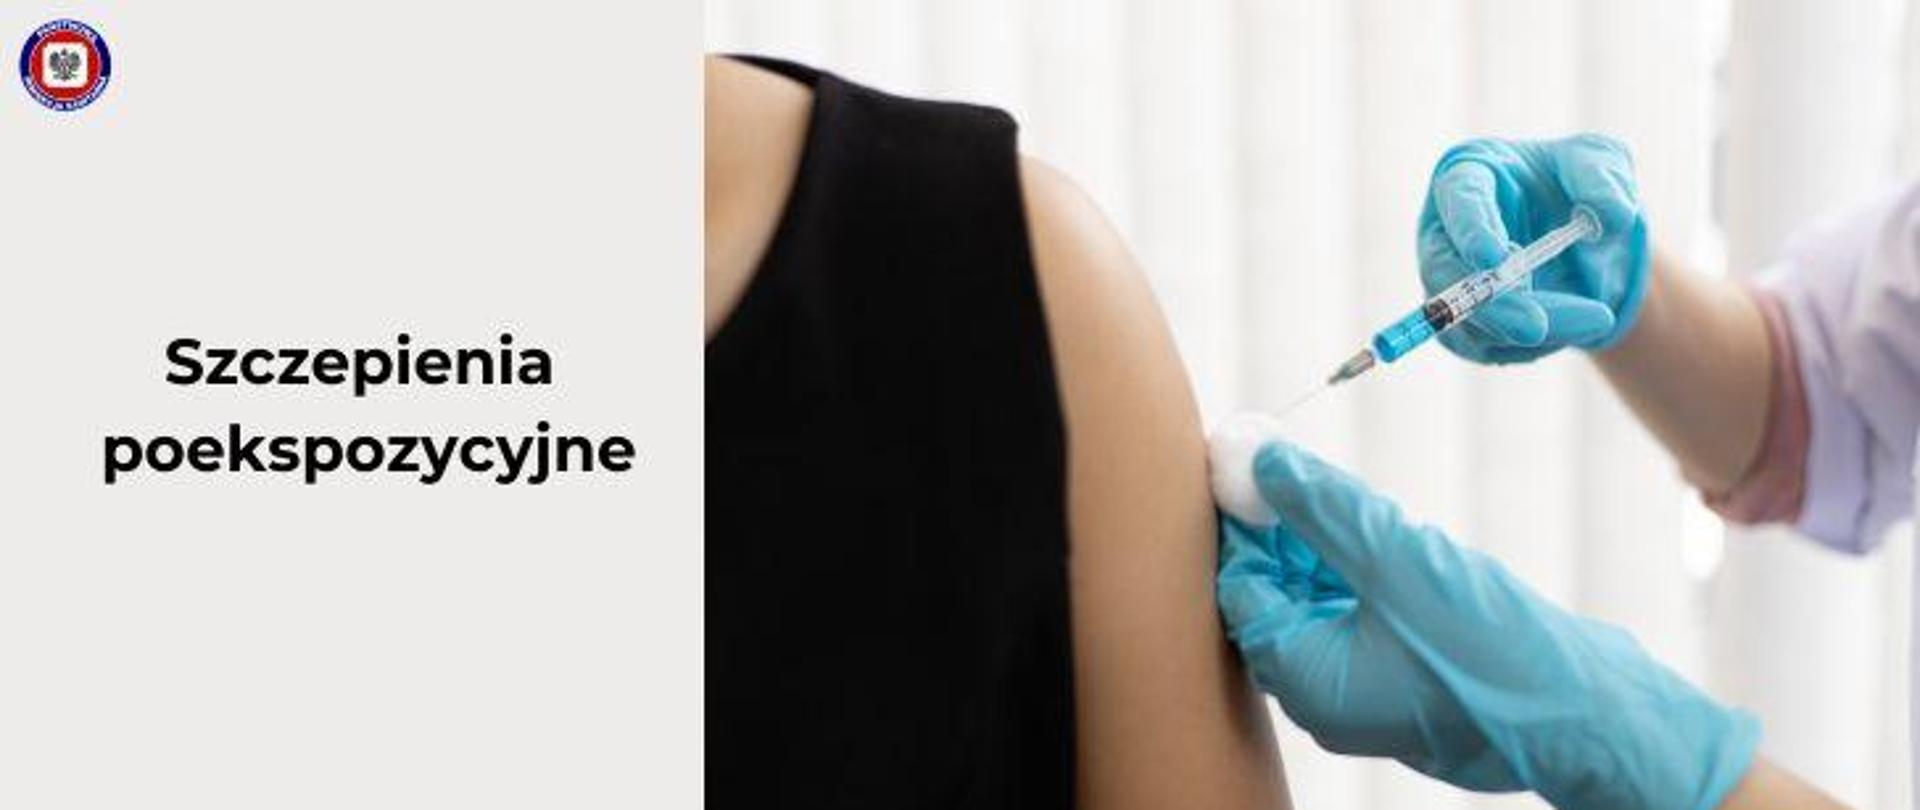 Po prawej ramię osoby podczas szczepienia, pielęgniarka w rękawiczkach trzyma strzykawkę i wacik przy ramieniu. Po lewej na jasnoszarym tle ciemny napis szczepienia poekspozycyjne. W lewym górnym rogu logo Państwowej Inspekcji Sanitarnej.